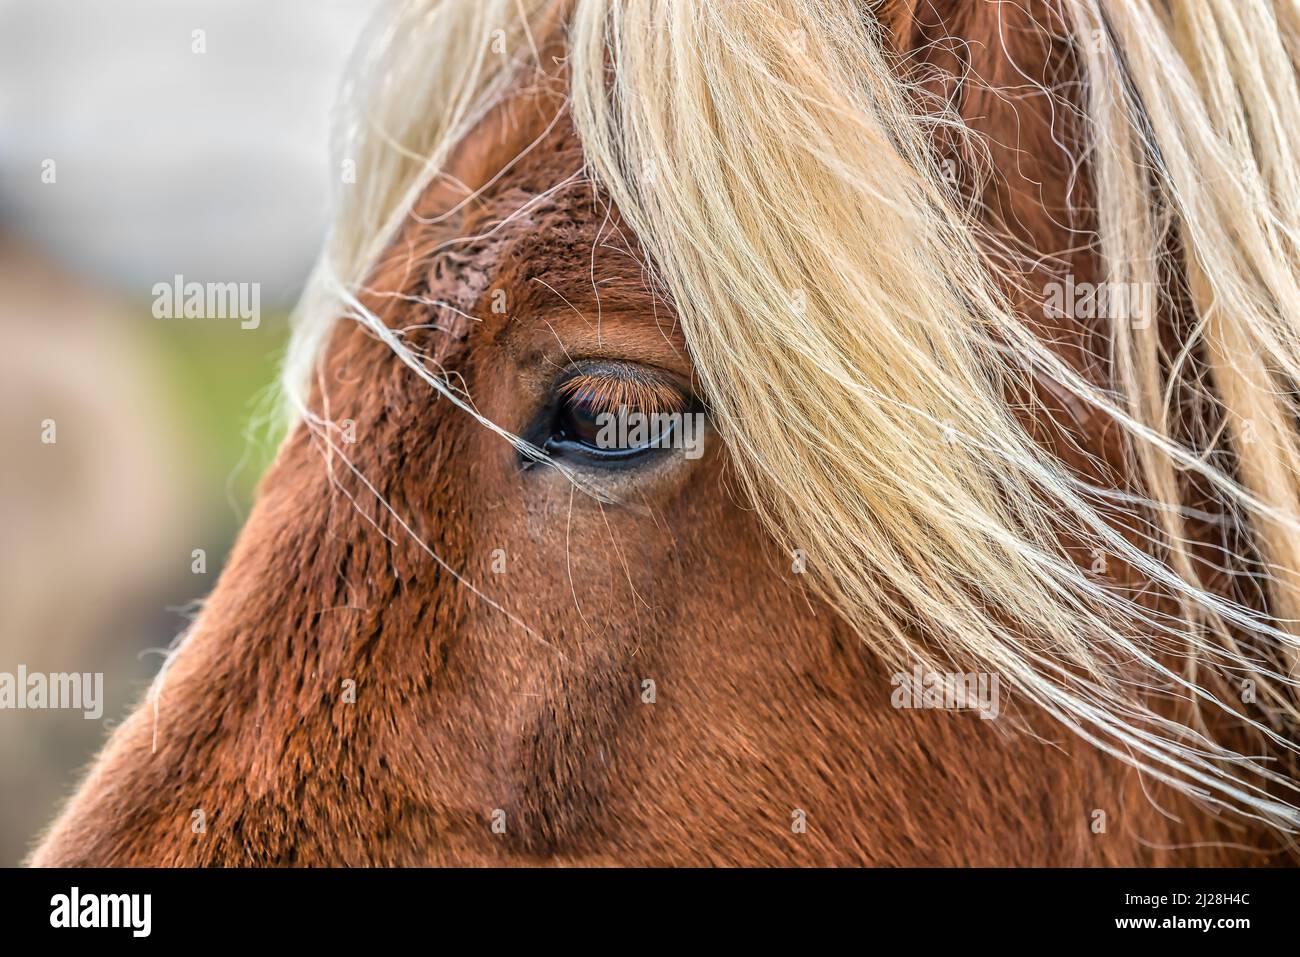 Portrait en gros plan d'un cheval islandais brun avec de longs cheveux blonds dans le sud de l'Islande Banque D'Images